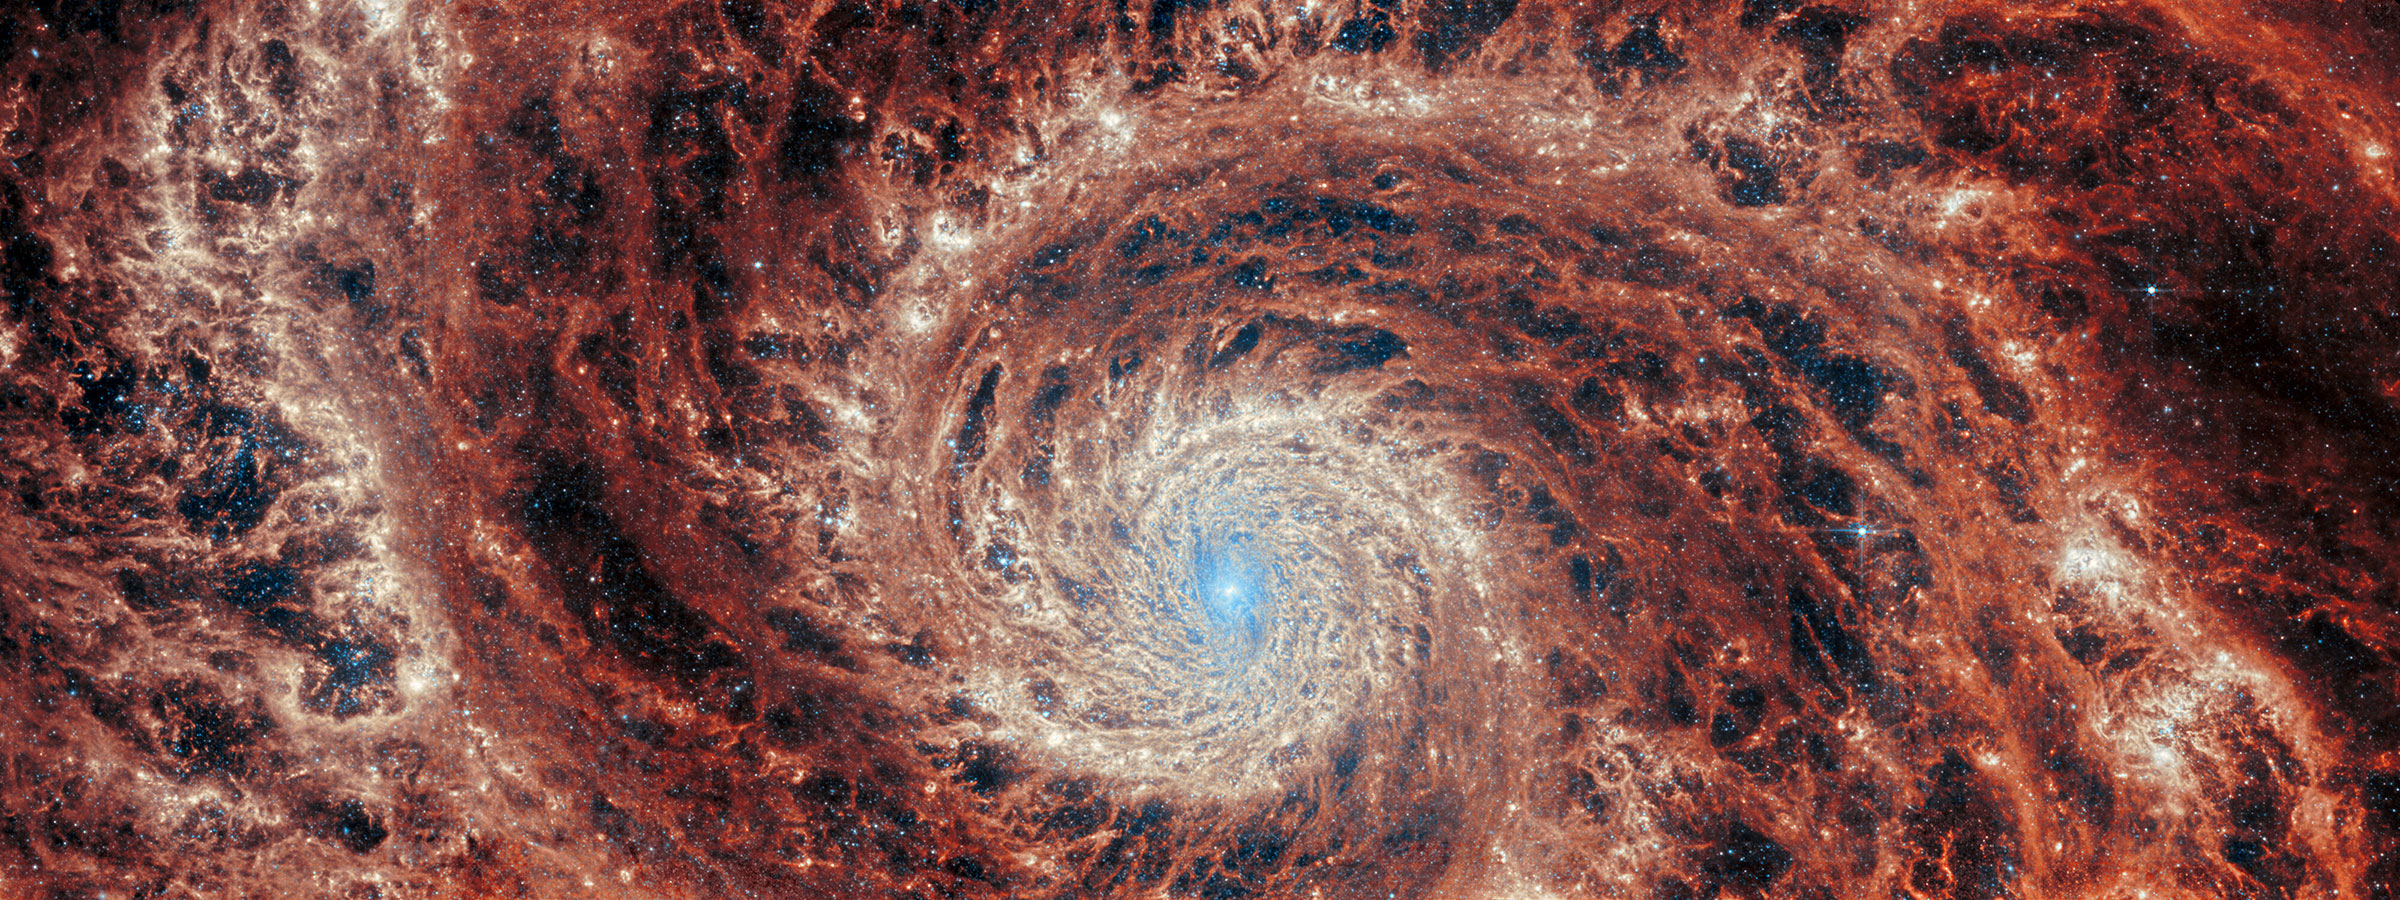 Visão infravermelha média de Webb da galáxia M51.  Uma grande galáxia espiral ocupa toda a imagem.  O núcleo é quase todo branco brilhante, mas também há estruturas detalhadas e rodopiantes que lembram água circulando em um ralo.  Há luz branca e azul clara que emana das estrelas e da poeira no centro do núcleo, mas é fortemente limitada ao núcleo.  Os anéis detalhados apresentam faixas de laranja profundo e cinza turvo, que são intercaladas por regiões vazias mais escuras.